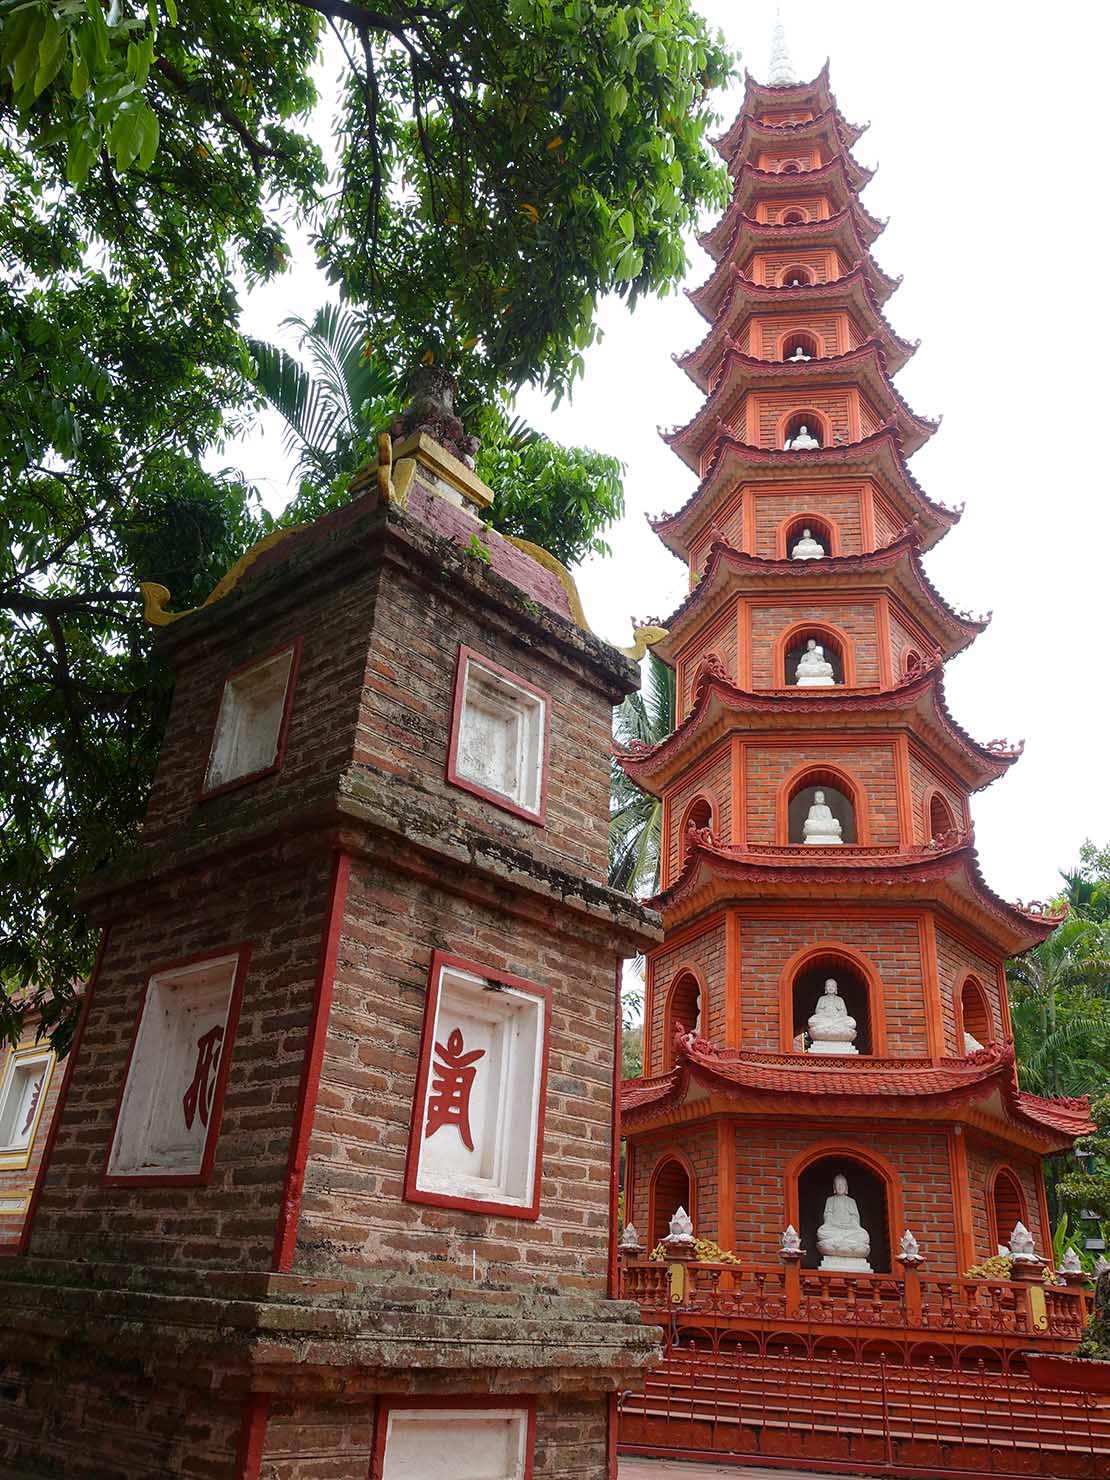 ベトナム・ハノイのタイ湖にある観光スポット「鎮国寺」の塔